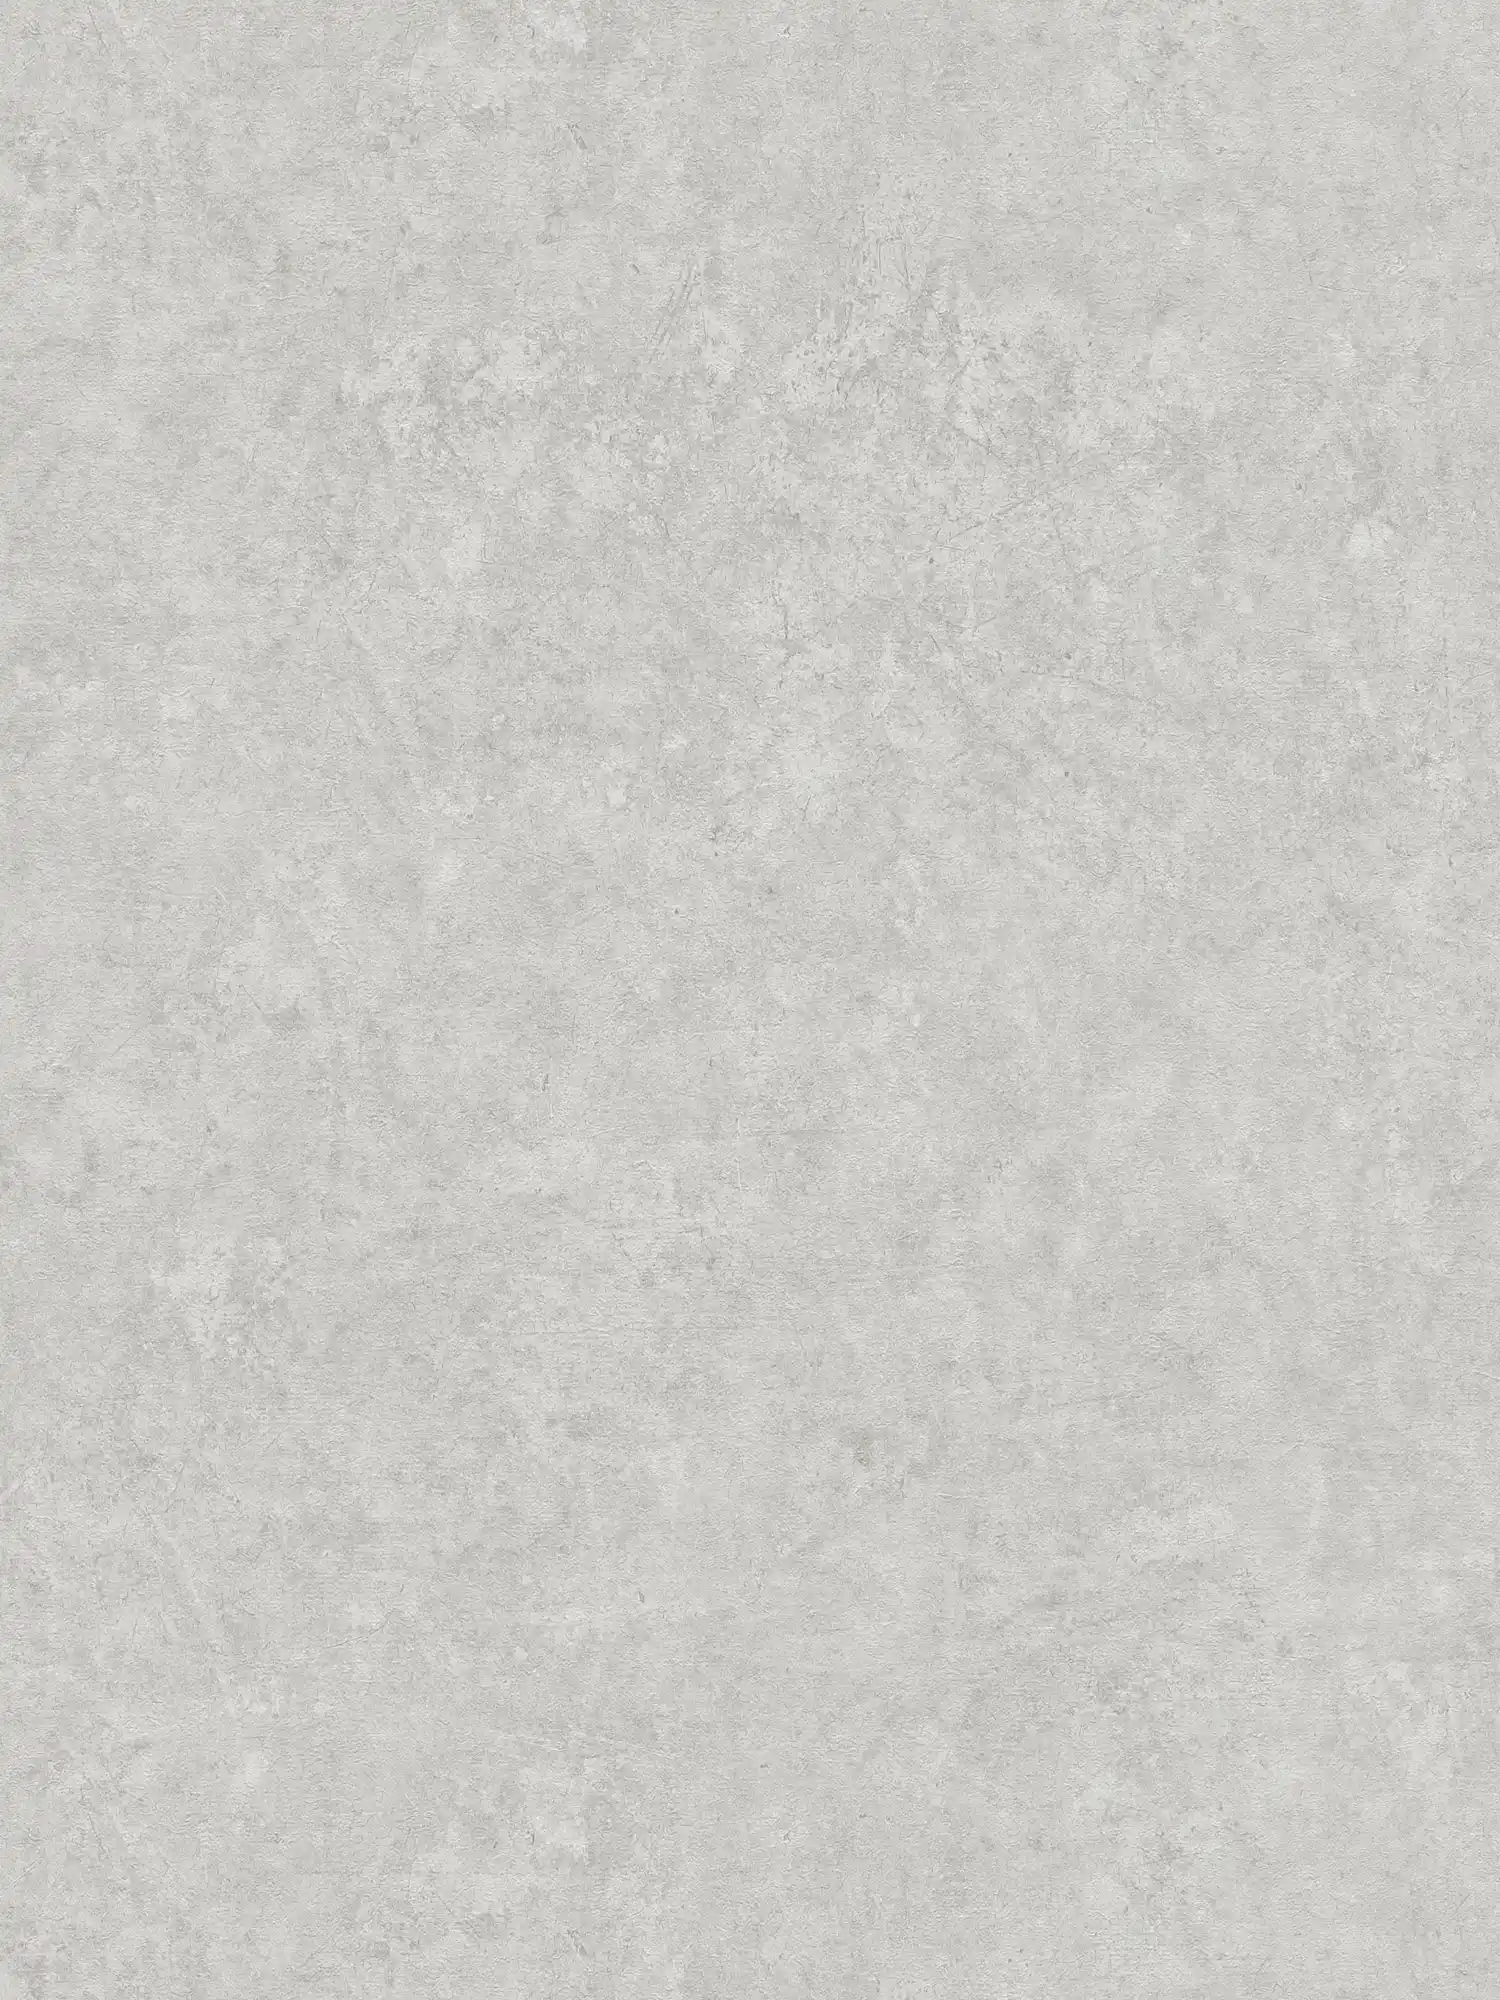 Concrete look non-woven wallpaper plain pattern - grey
